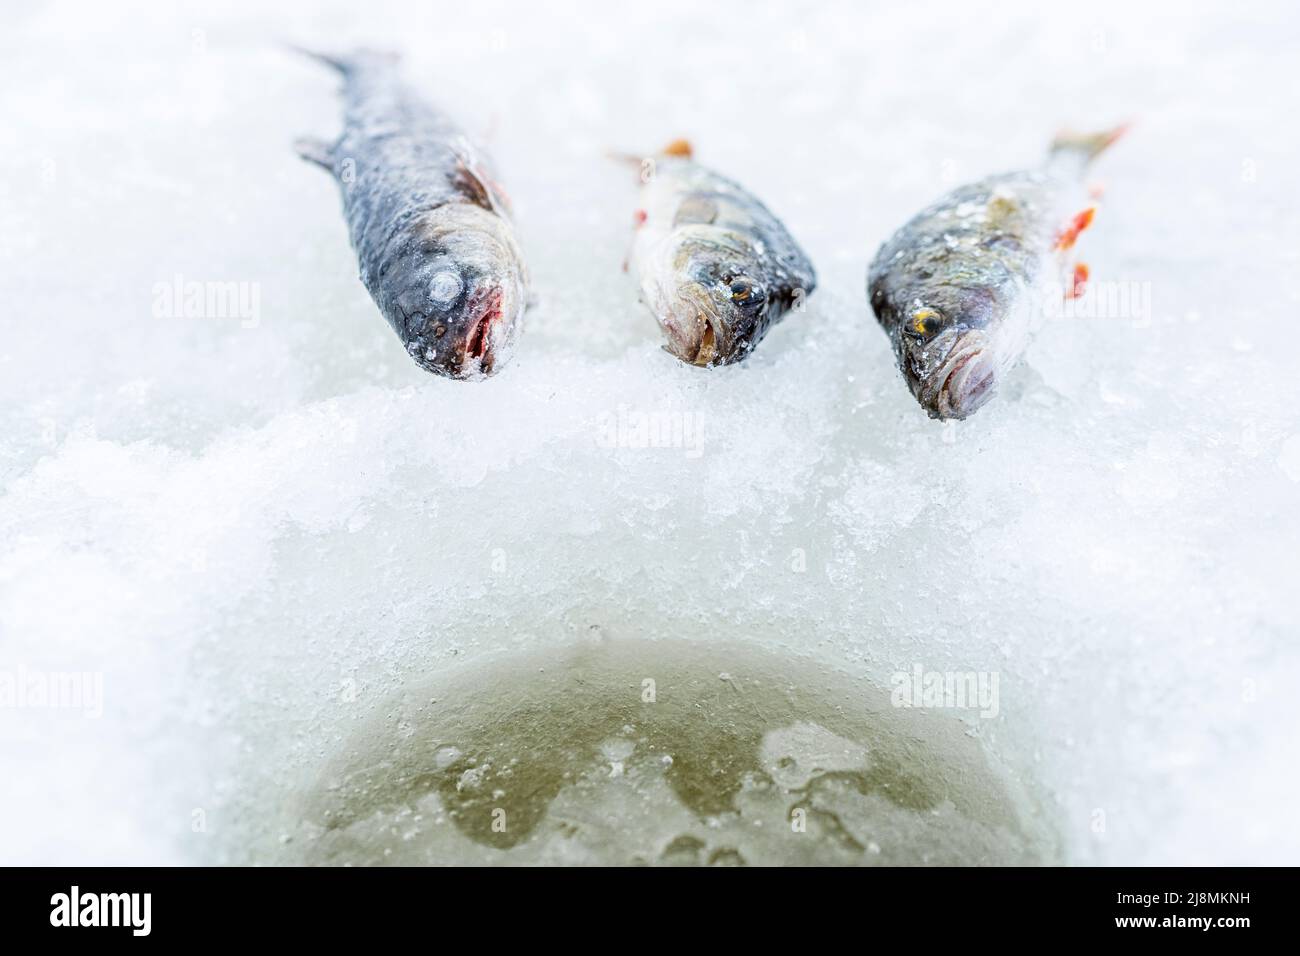 Gros plan des poissons qui viennent d'être pêchés par la pêche sous la glace, Laponie, Suède Banque D'Images